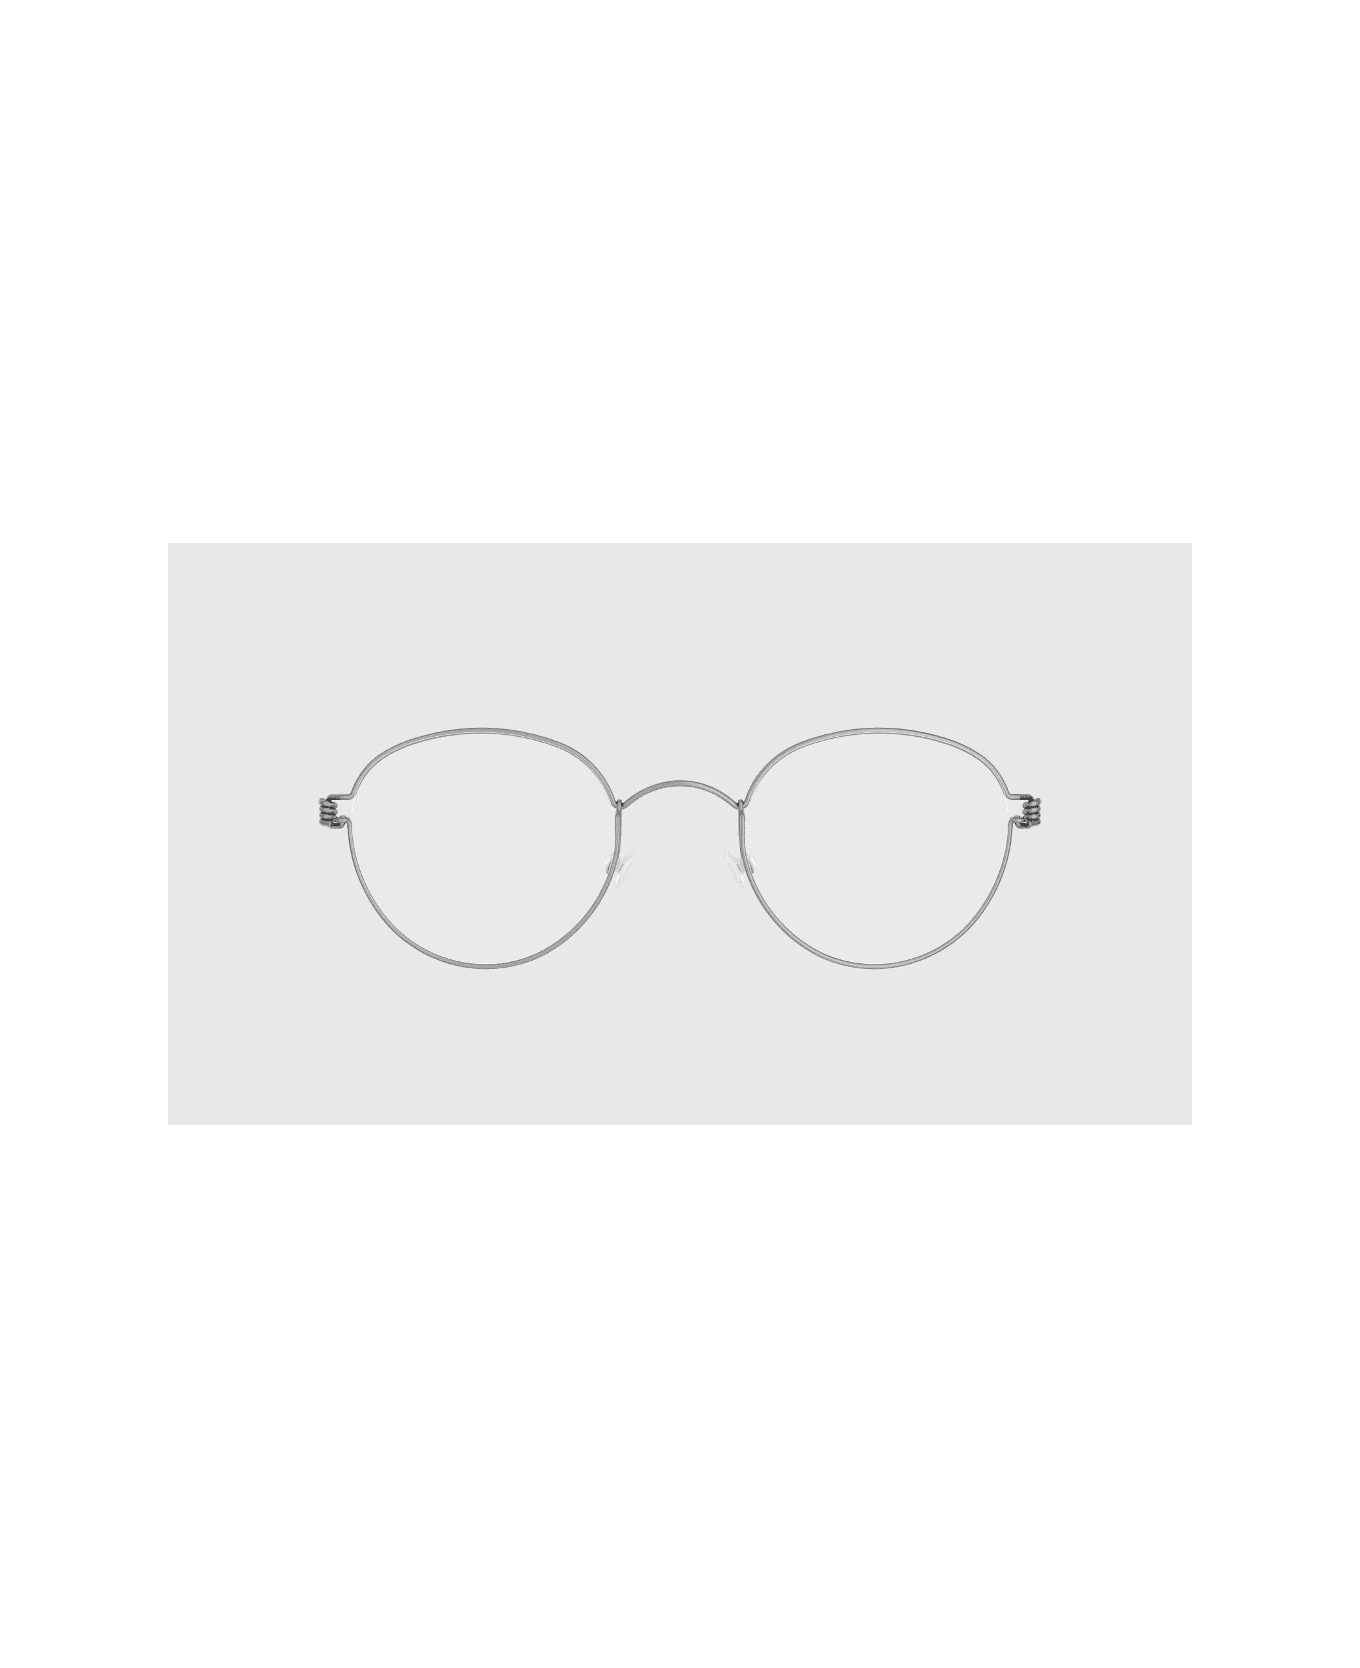 LINDBERG Rim Bo 4910 Glasses - Silver